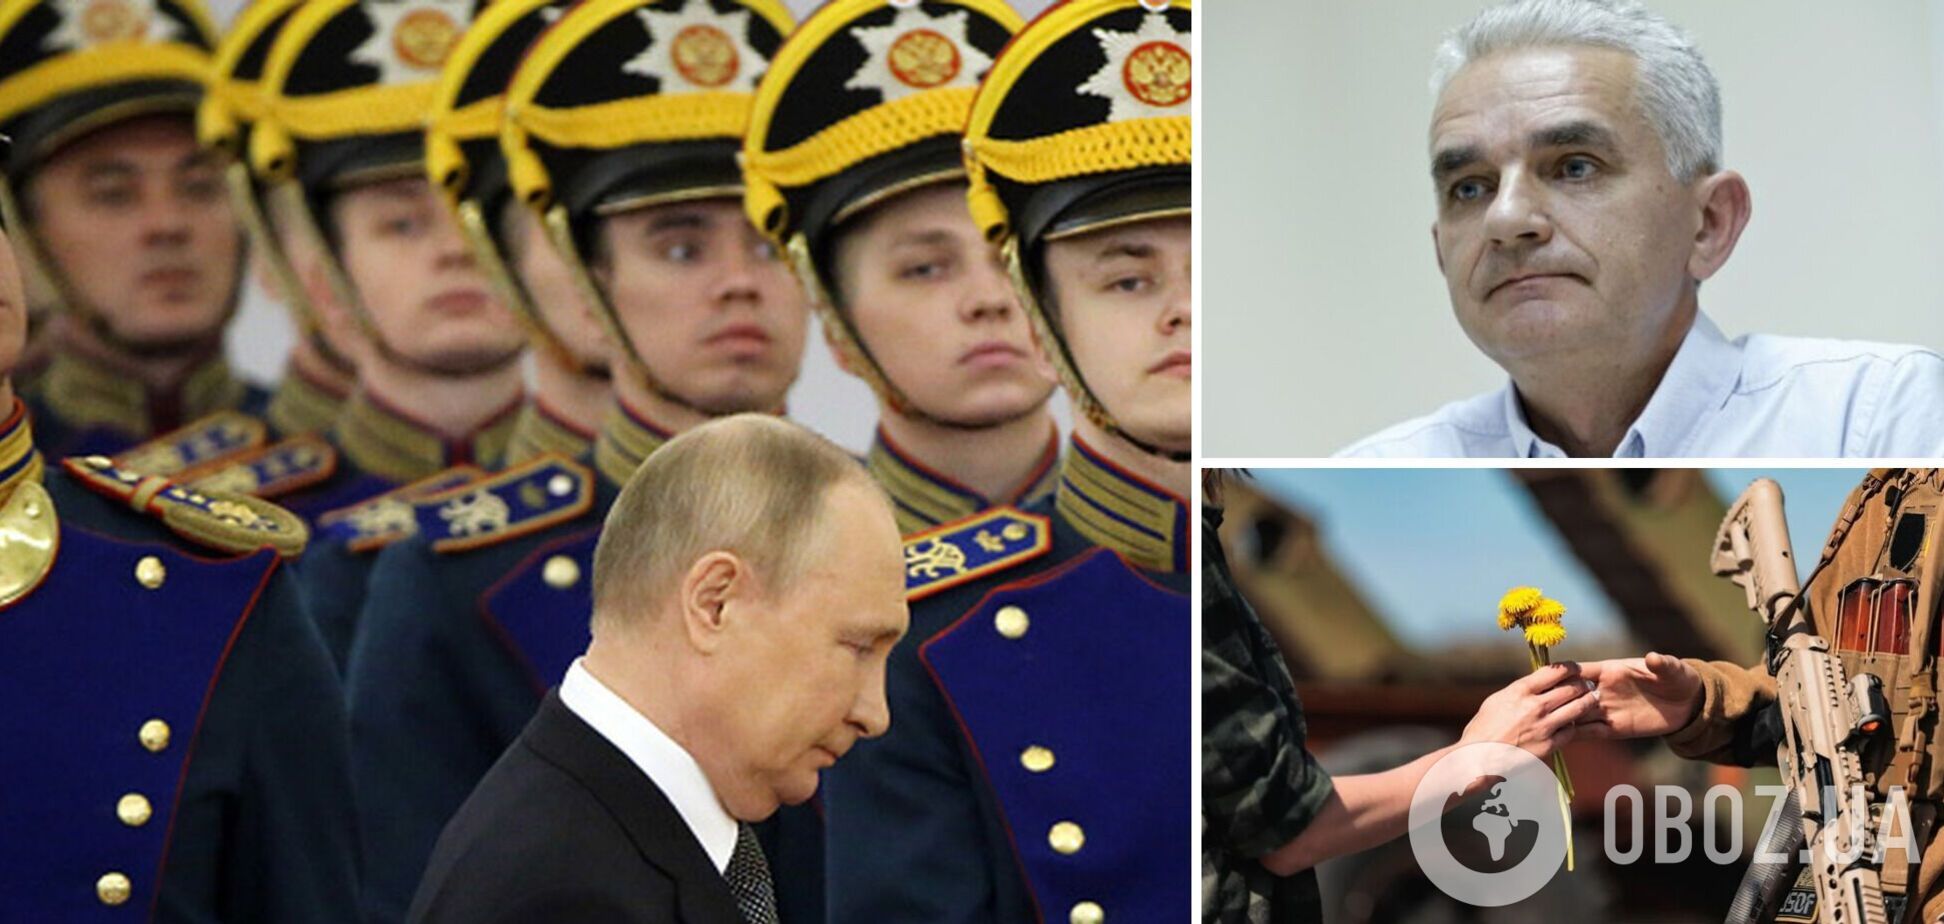 Мельник: Путин готовит большое наступление, известны сроки и направления. Интервью